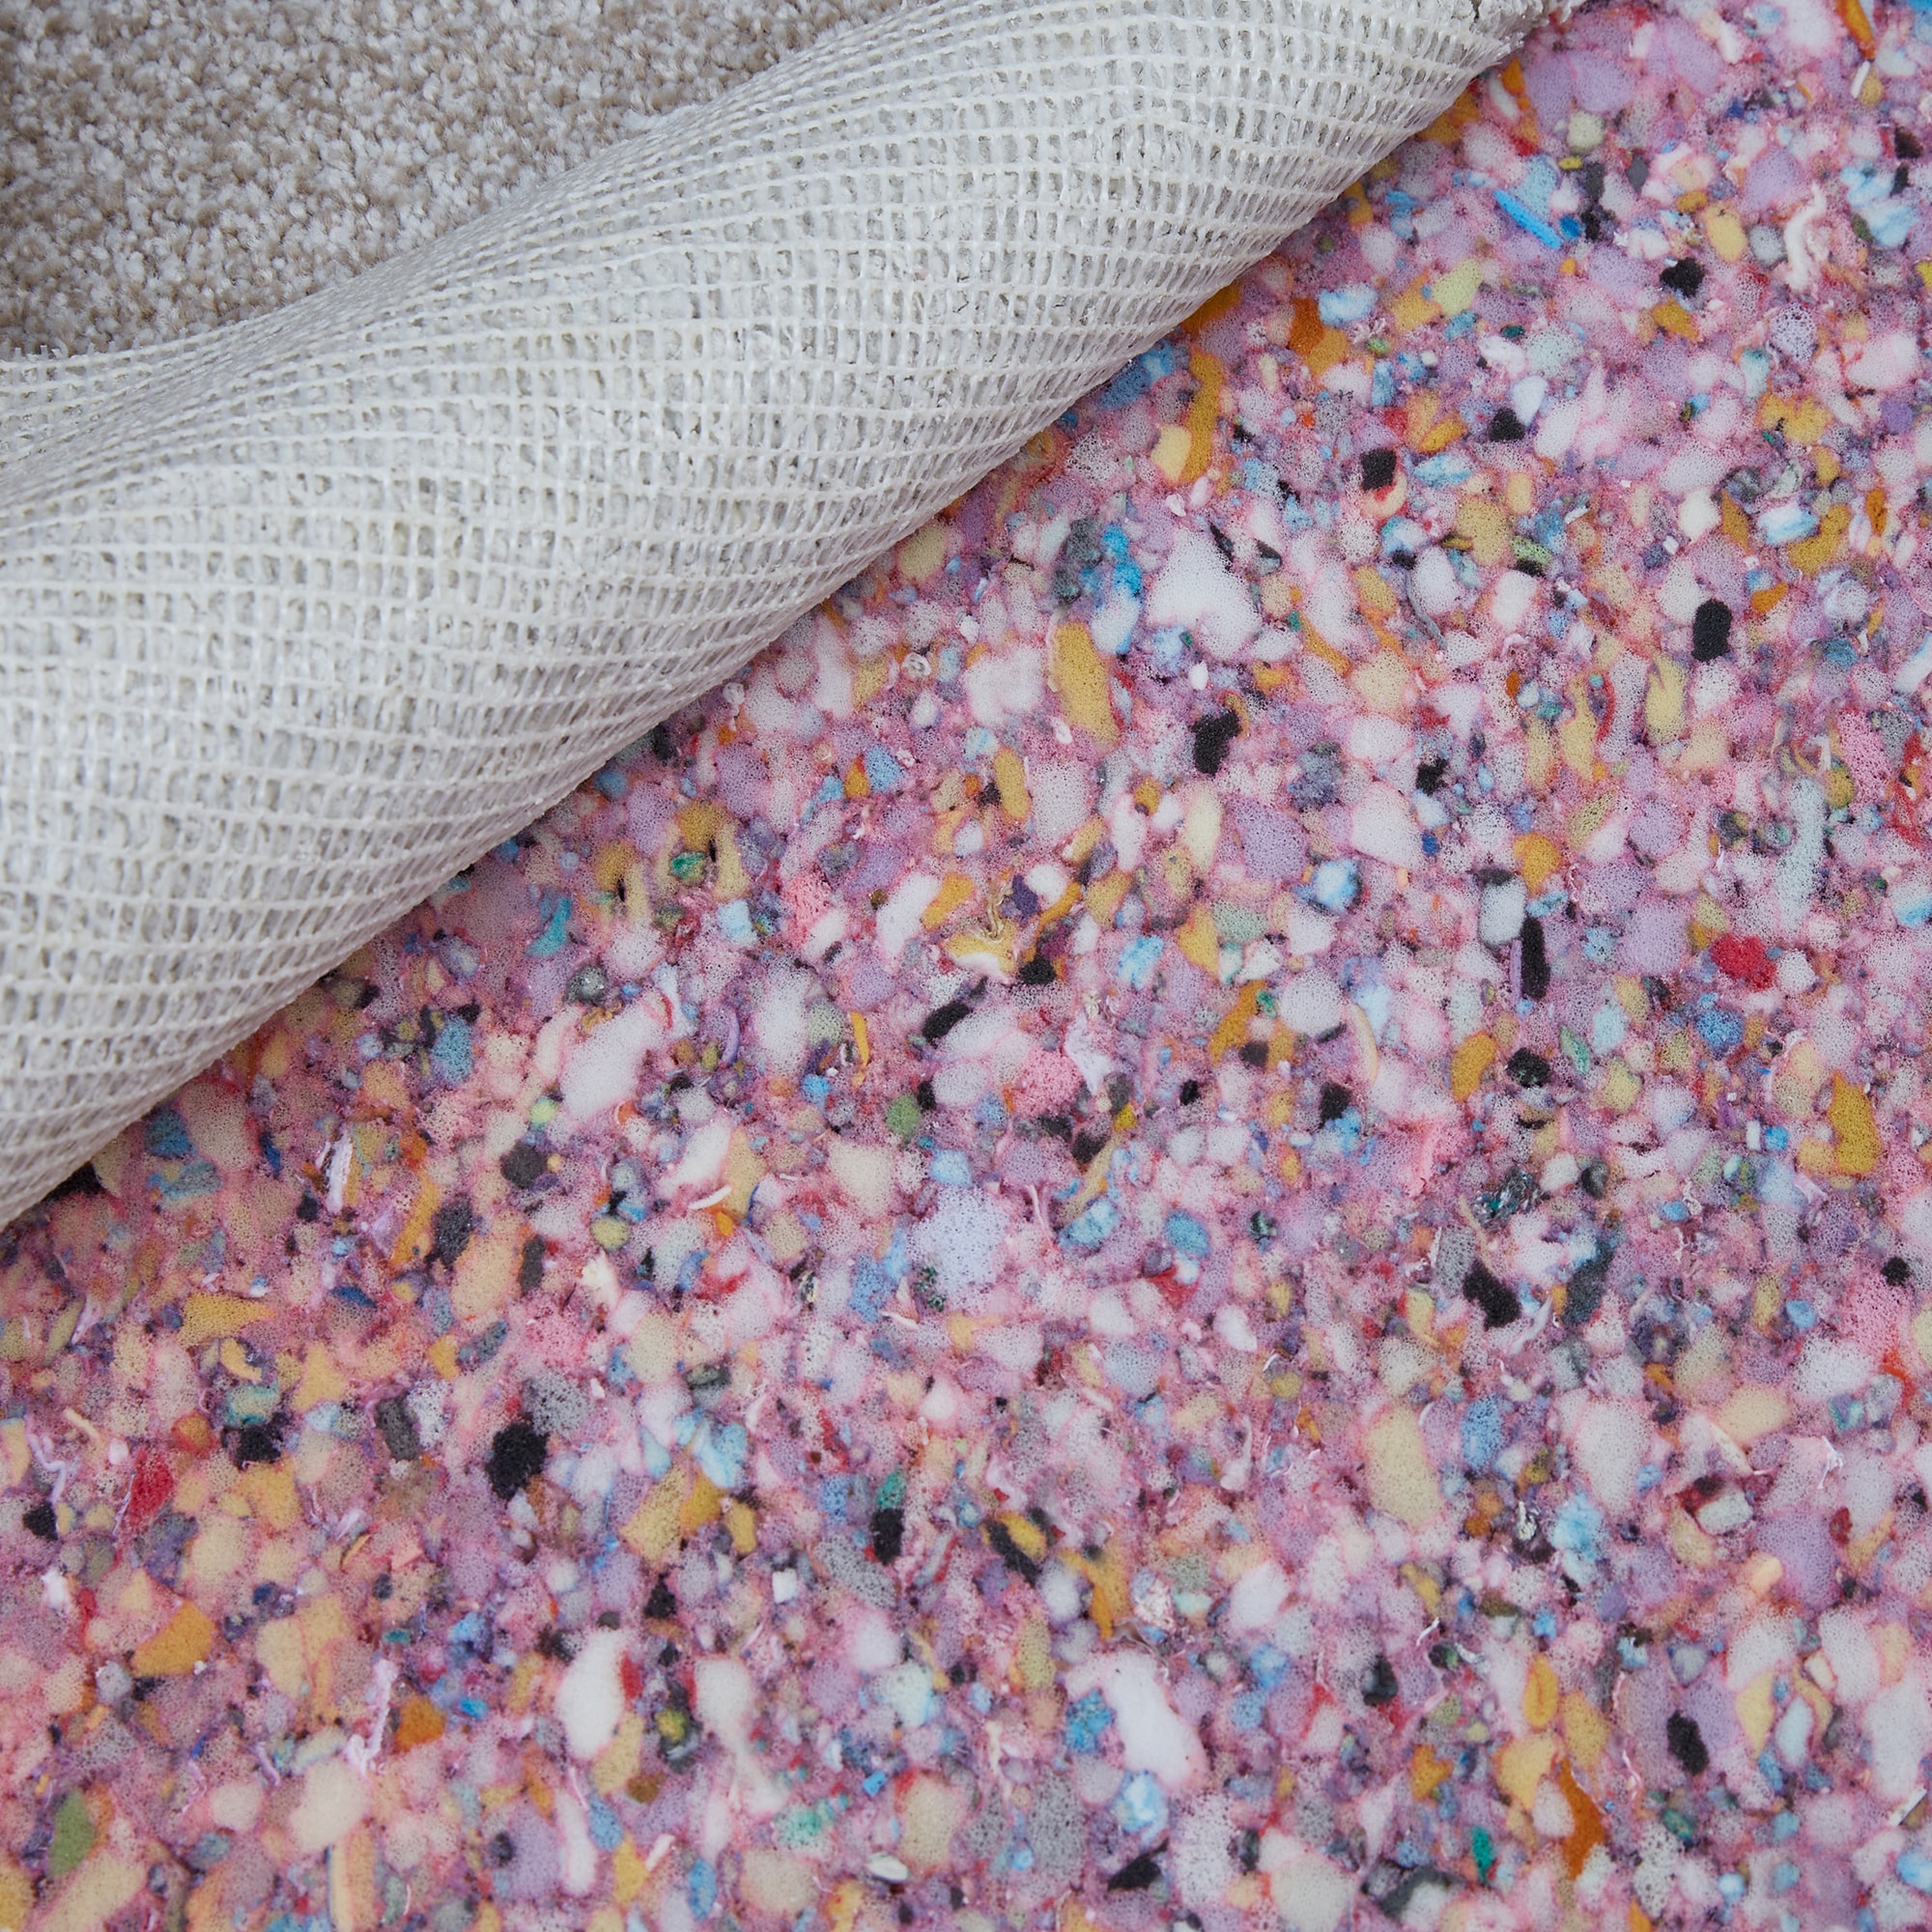 Leggett & Platt Rebond Carpet Padding with Moisture Barrier in the Carpet  Padding department at